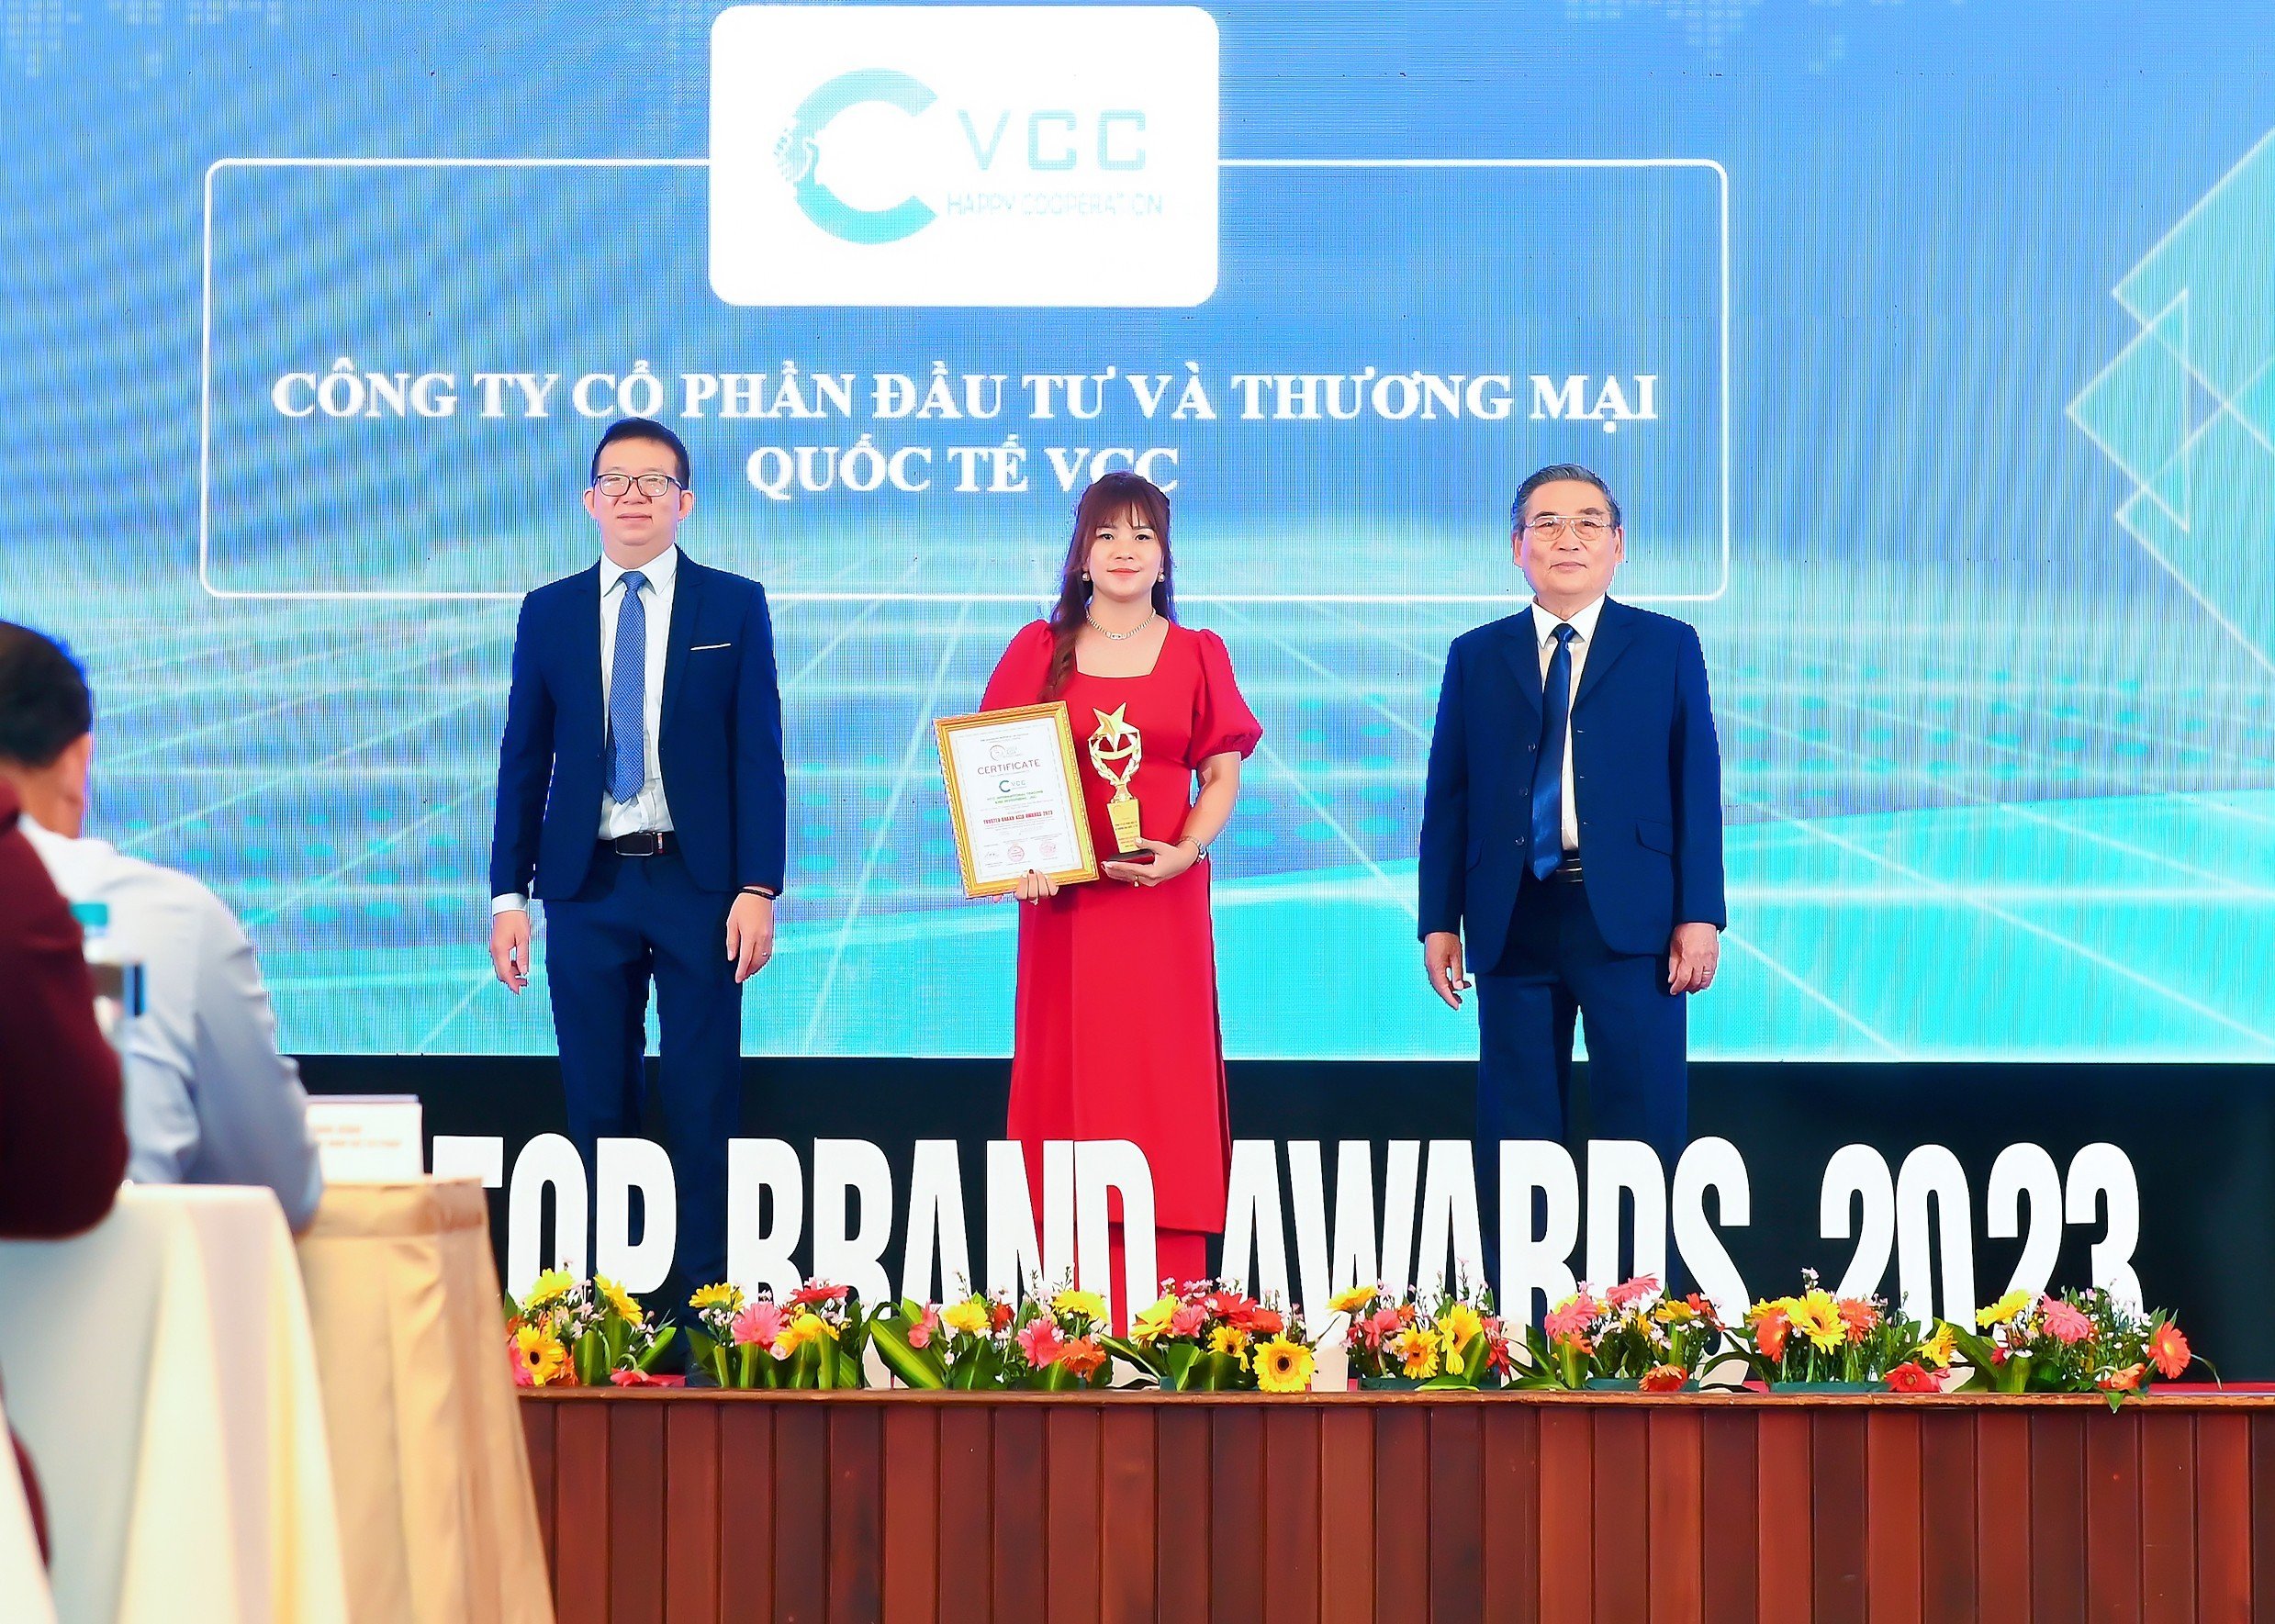 Đại diện VCC được trao tặng giải thưởng về hạng mục “Thương hiệu” tín nhiệm hàng đầu